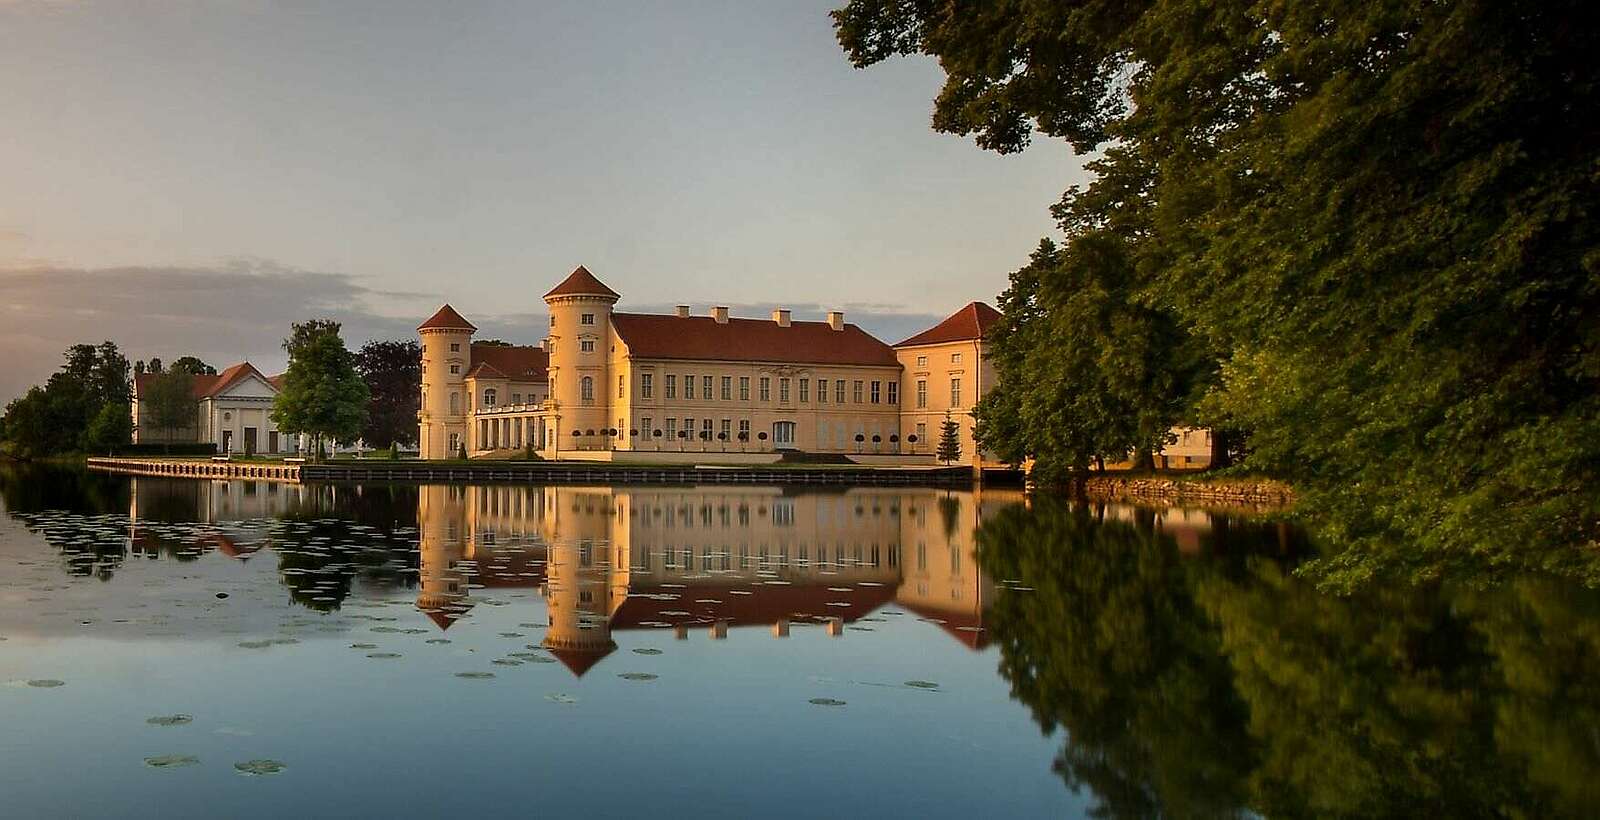 Schloss Rheinsberg im Abendlicht,
        
    

        Picture: Fotograf / Lizenz - Media Import/Leo Seidel